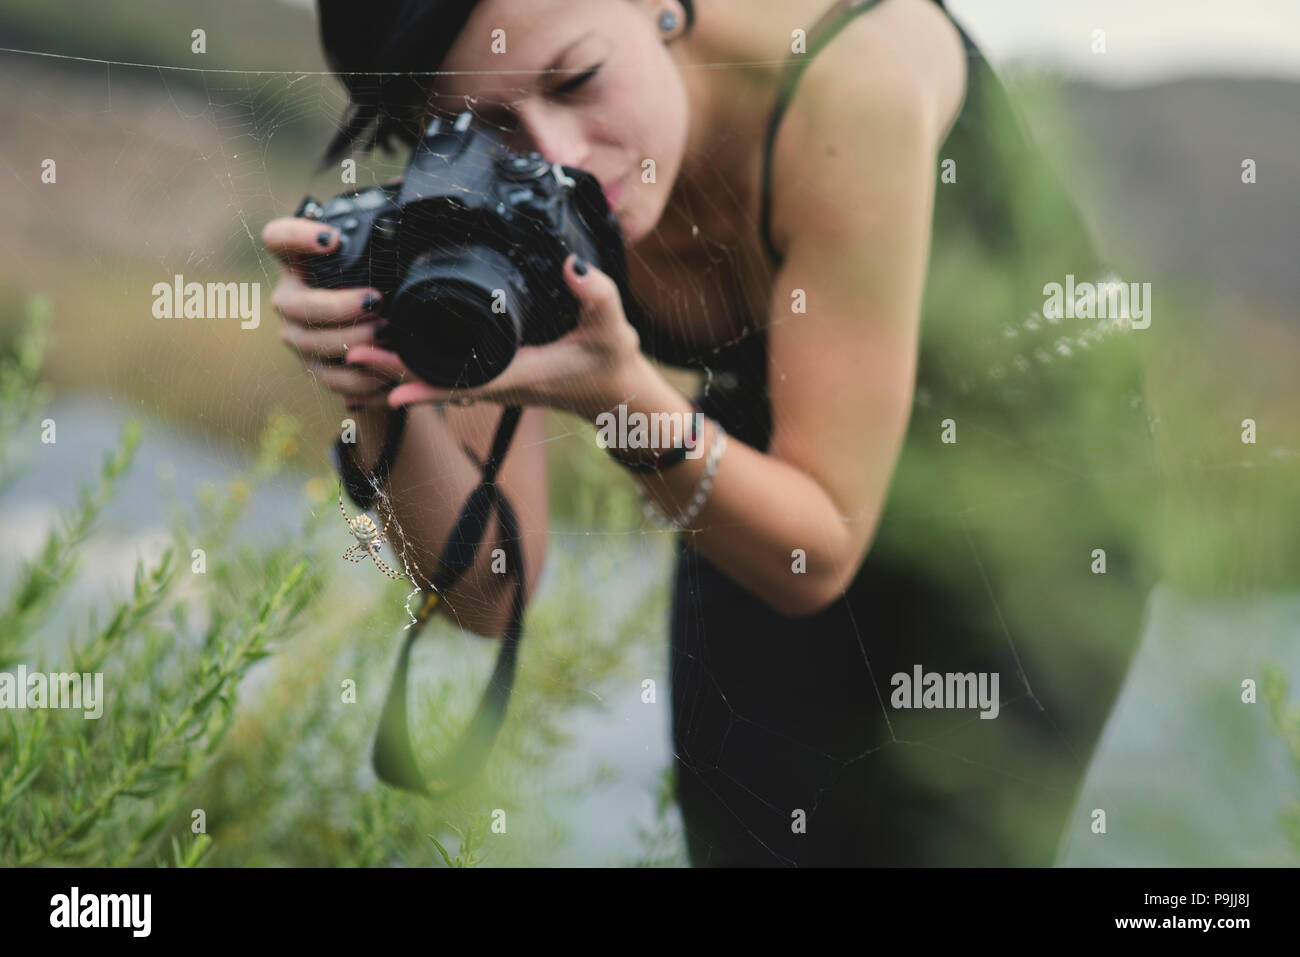 Belle jeune femme photographe portant des vêtements noirs de prendre des photos macro de la nature et des insectes à l'extérieur. Tiger araignée dans sa toile d'araignée étant phot Banque D'Images